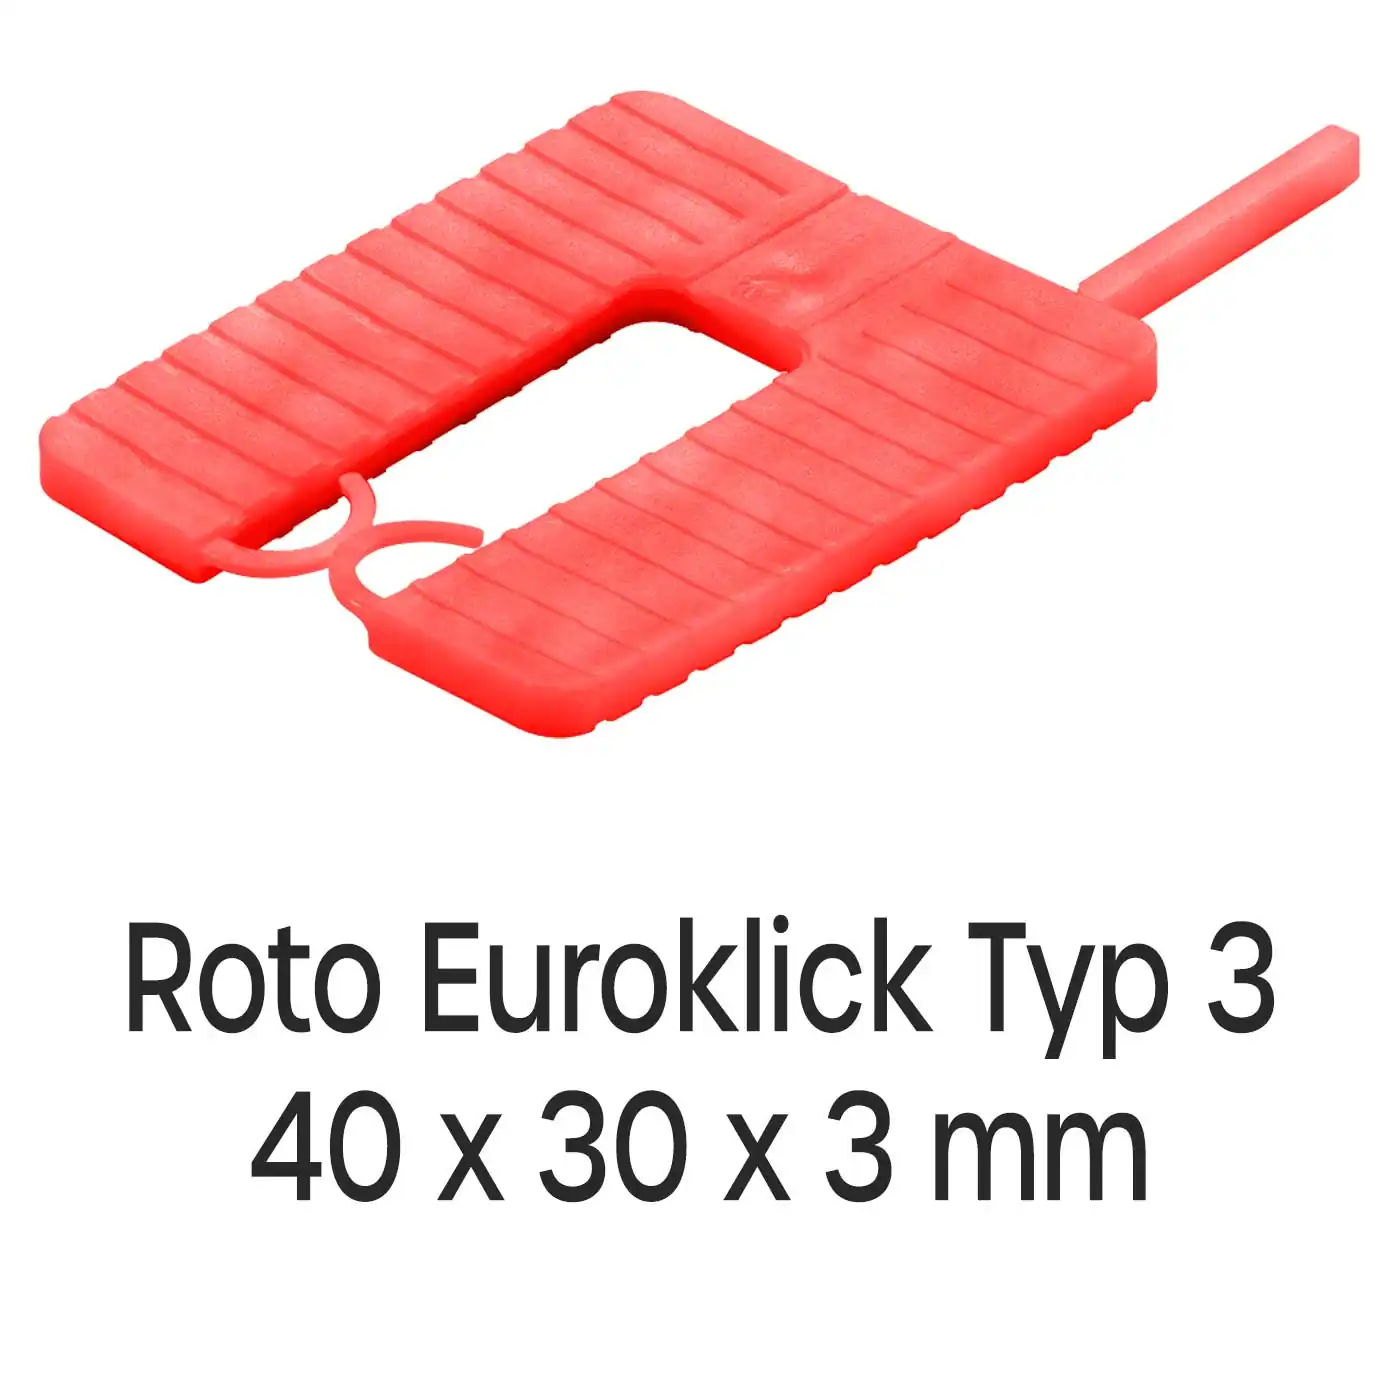 Distanzplatten Roto Euroklick Typ 3 40 x 30 x 3 mm 1000 Stück